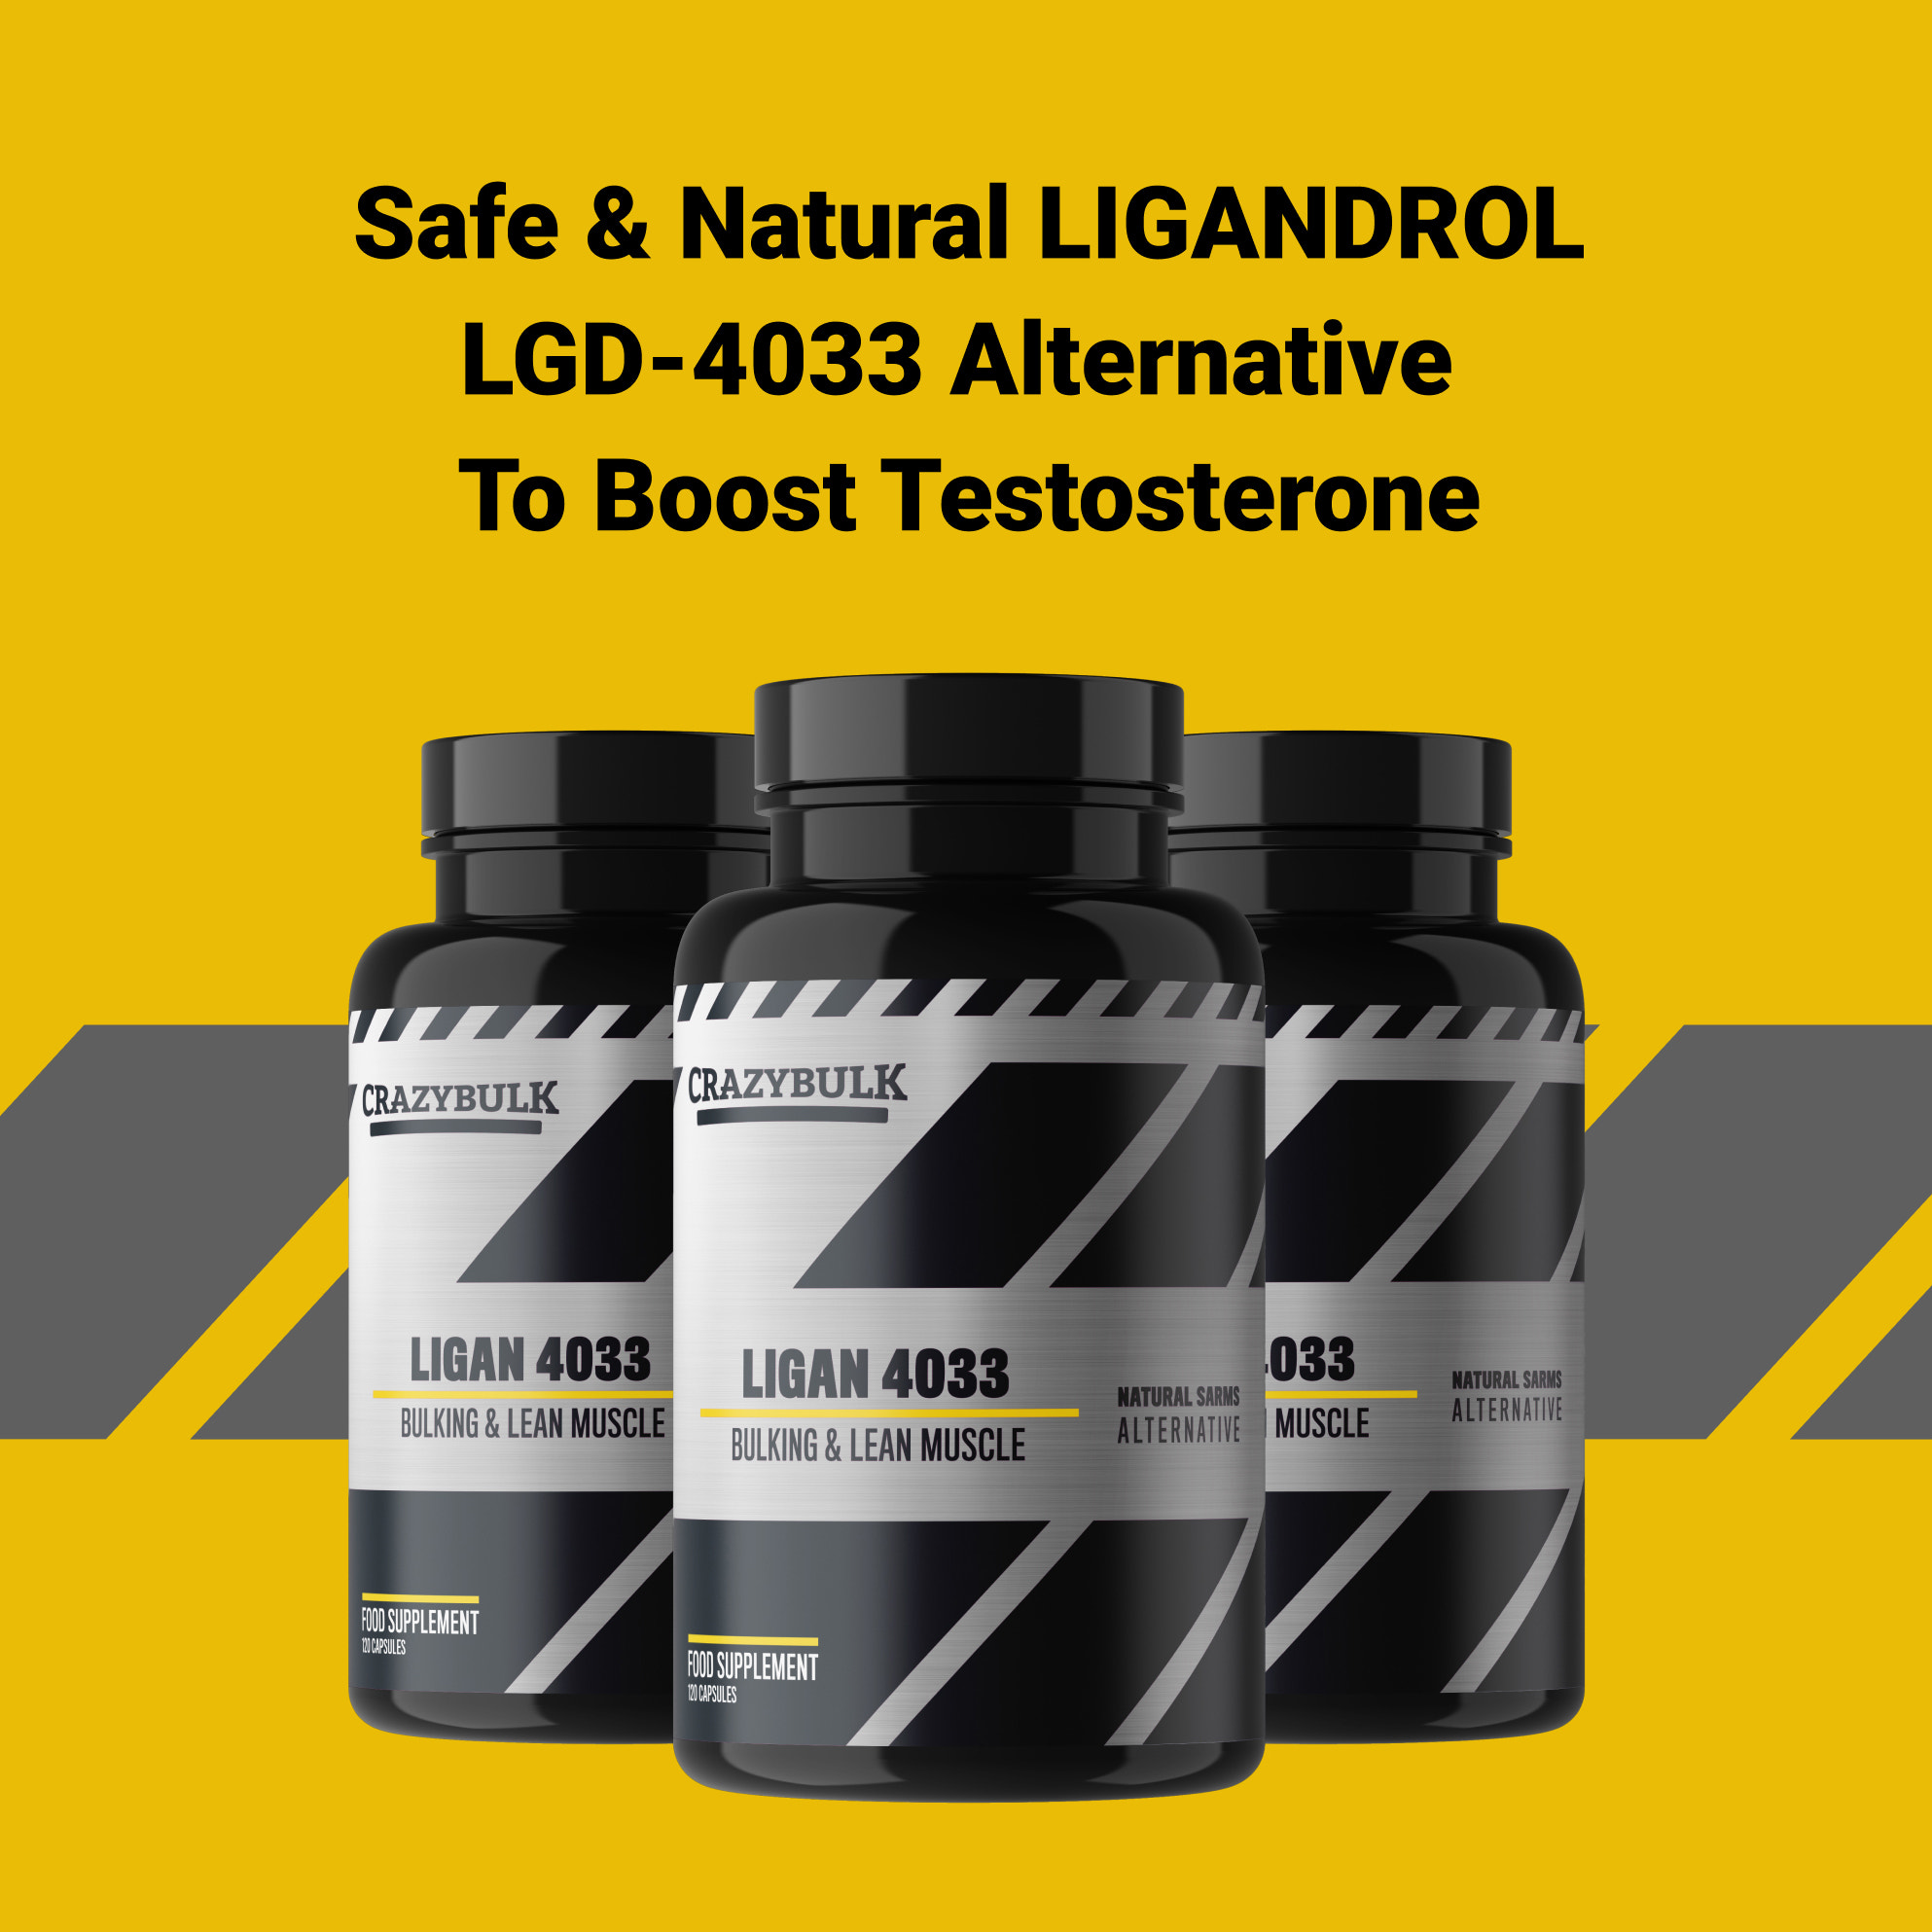 Natural Ligandrol LGD-4033 Alternative